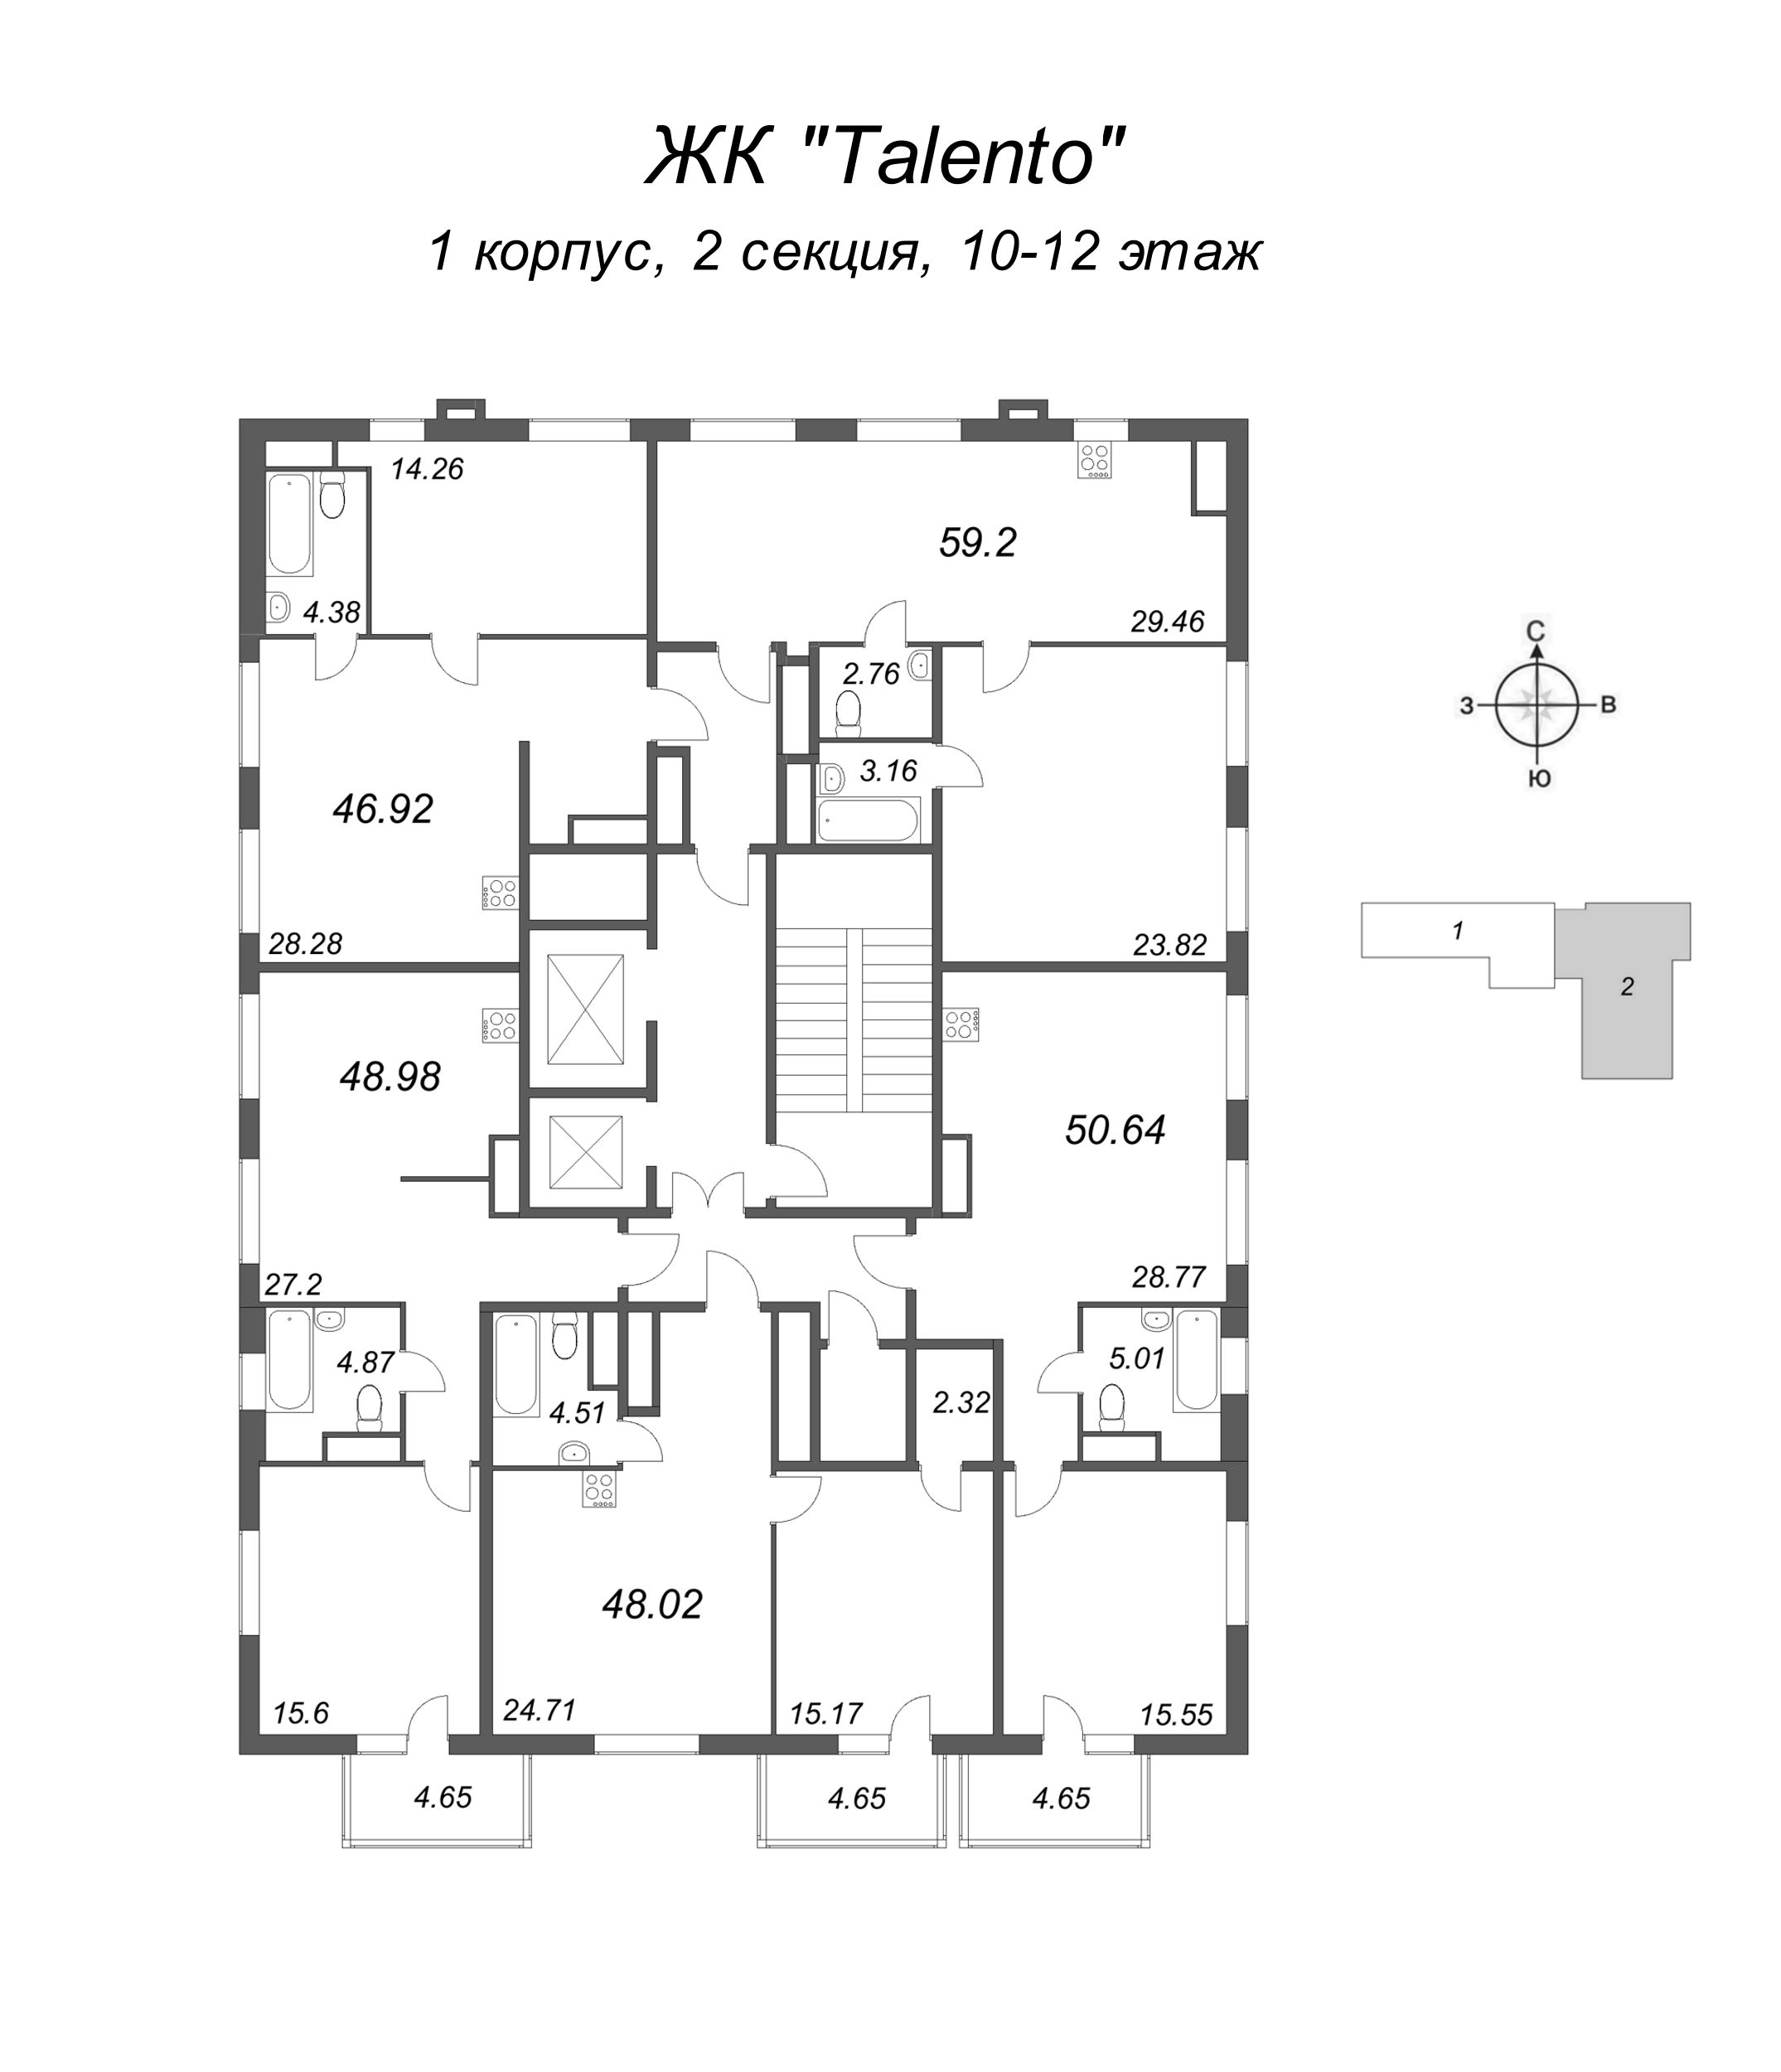 2-комнатная (Евро) квартира, 48.02 м² в ЖК "Talento" - планировка этажа